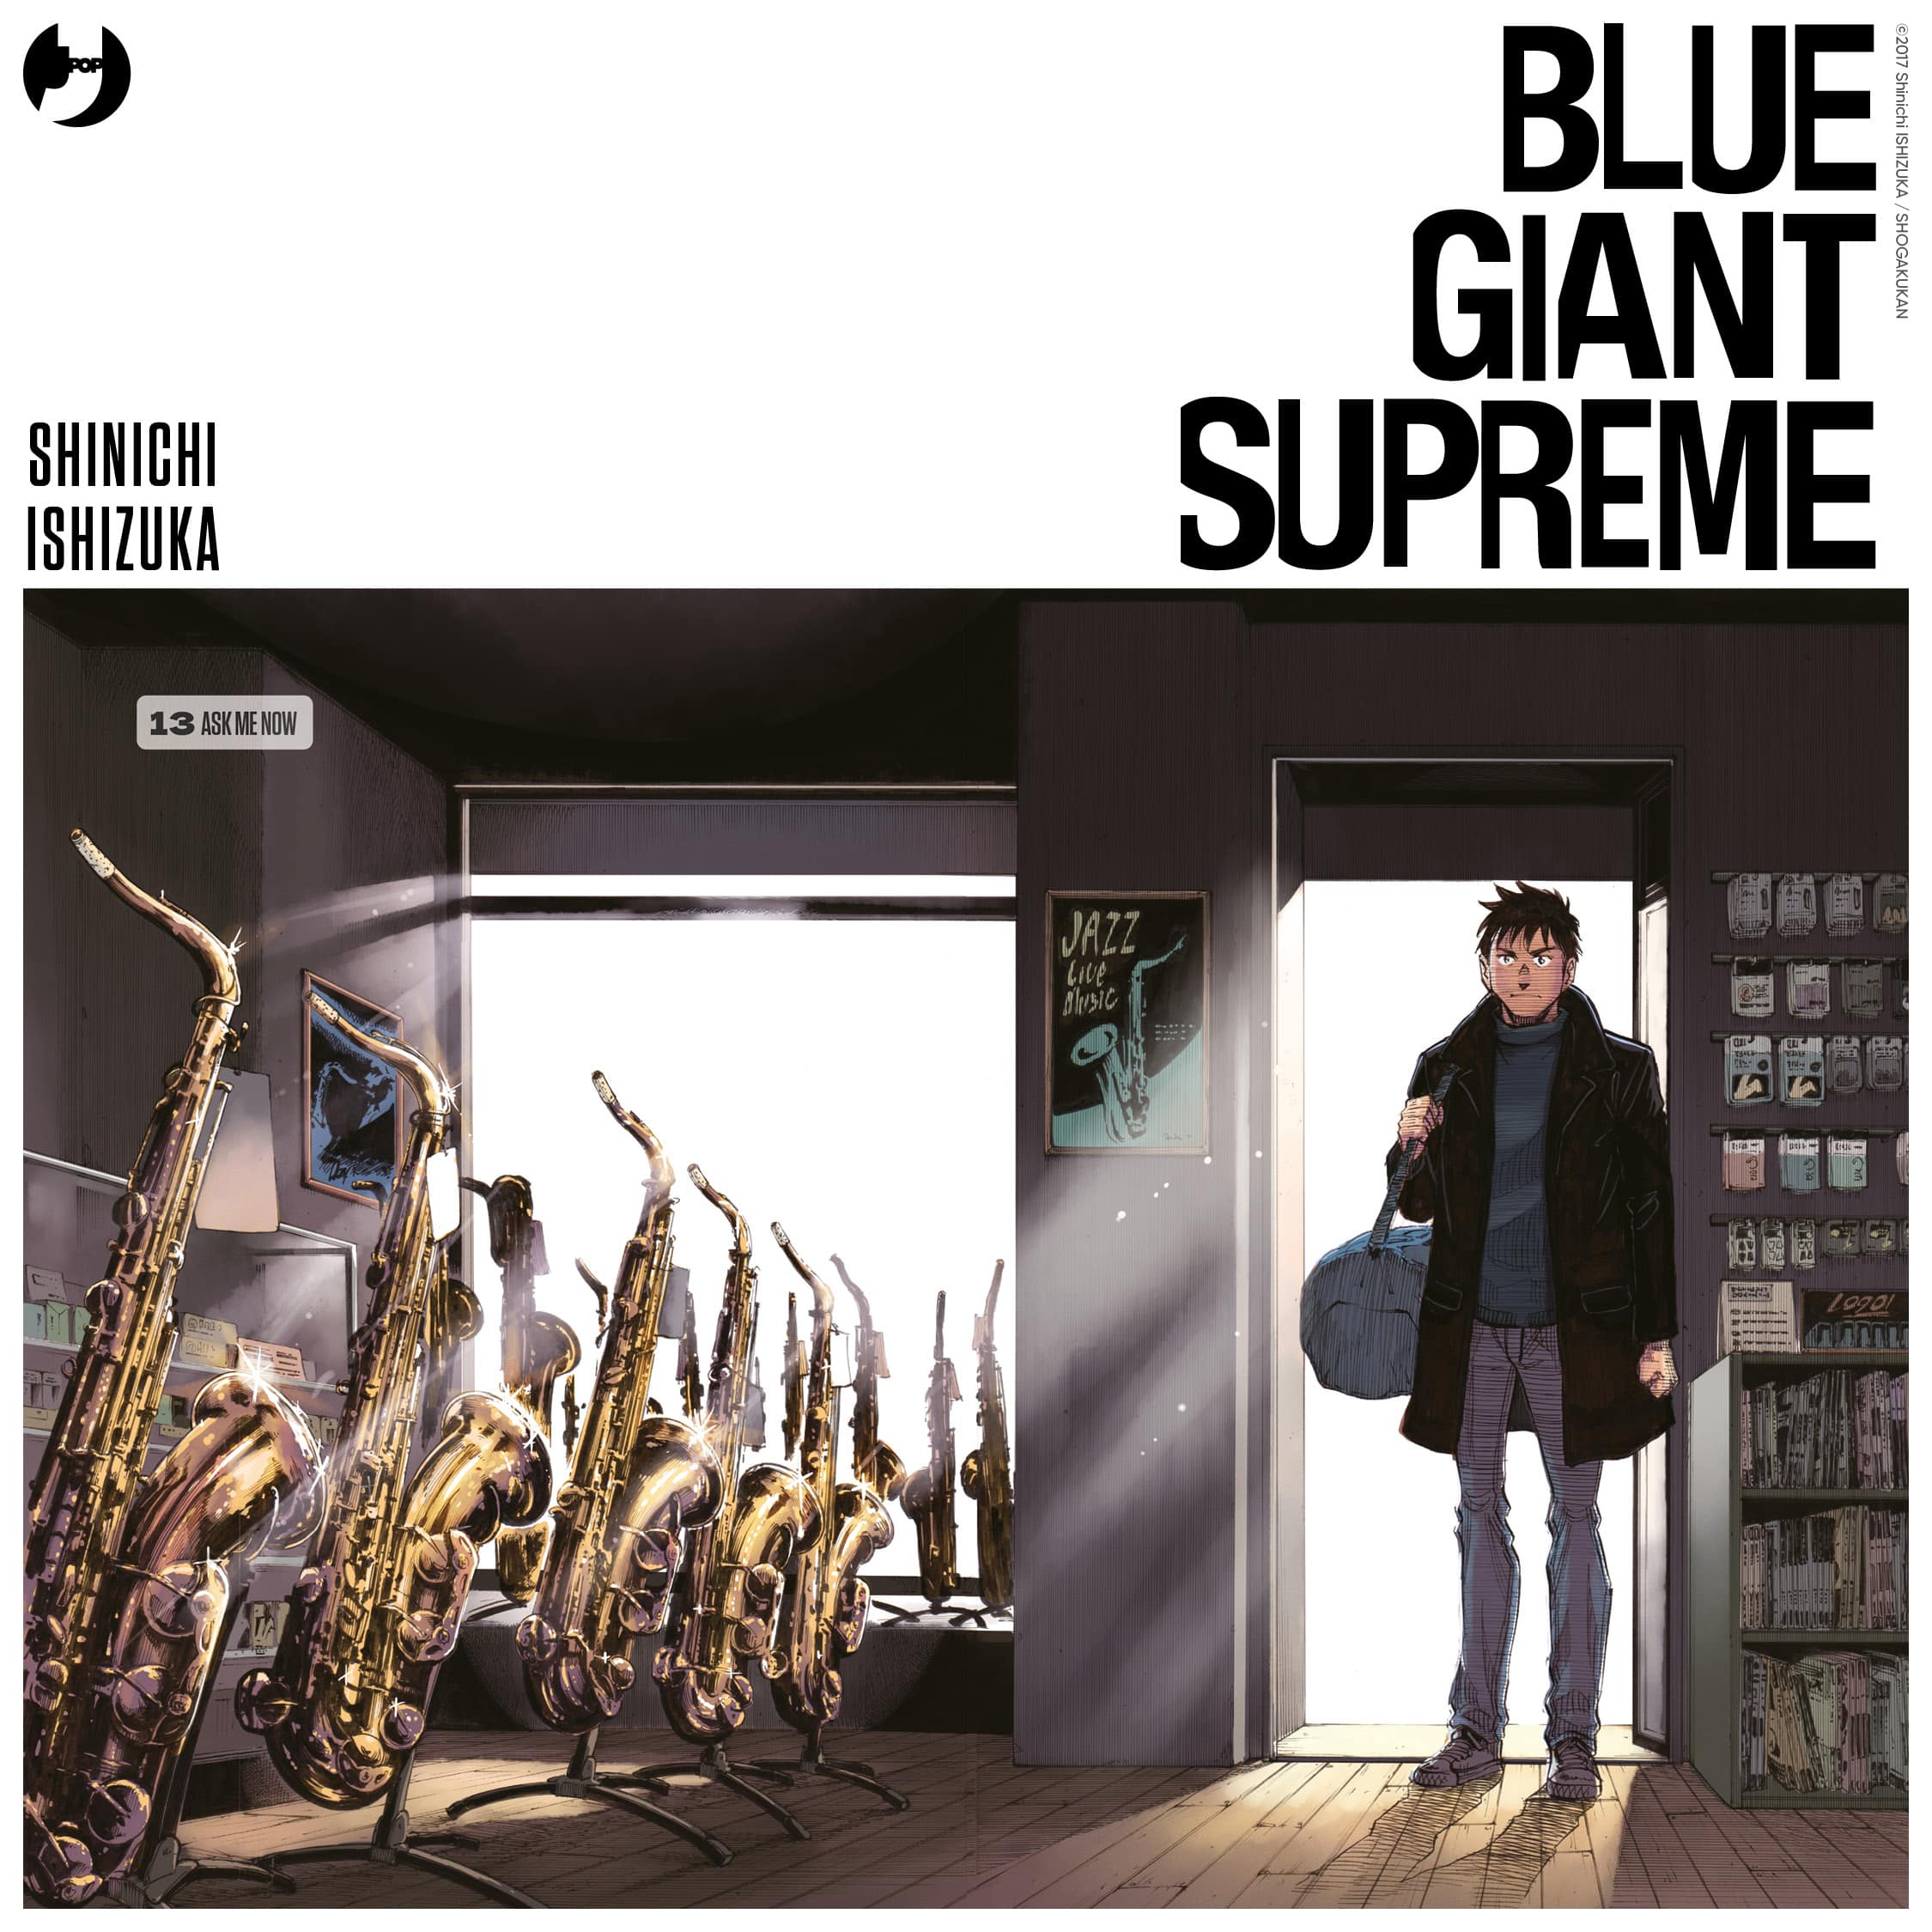 Un'illustrazione di Blue Giant Supreme di Shinichi Ishizuka